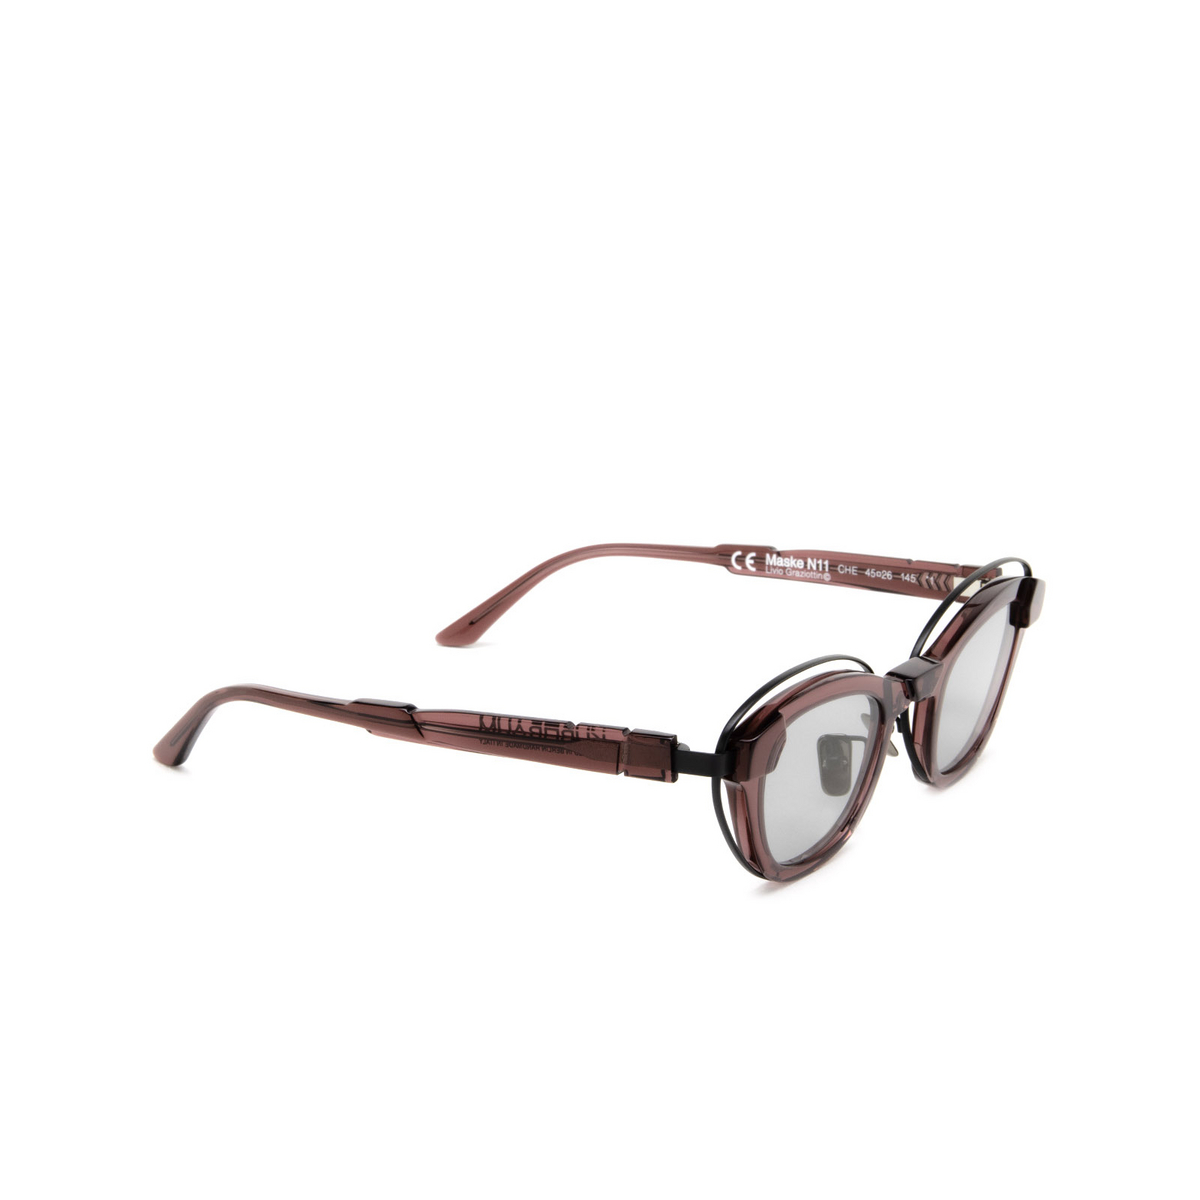 Kuboraum N11 Sunglasses CHE Cherry - three-quarters view